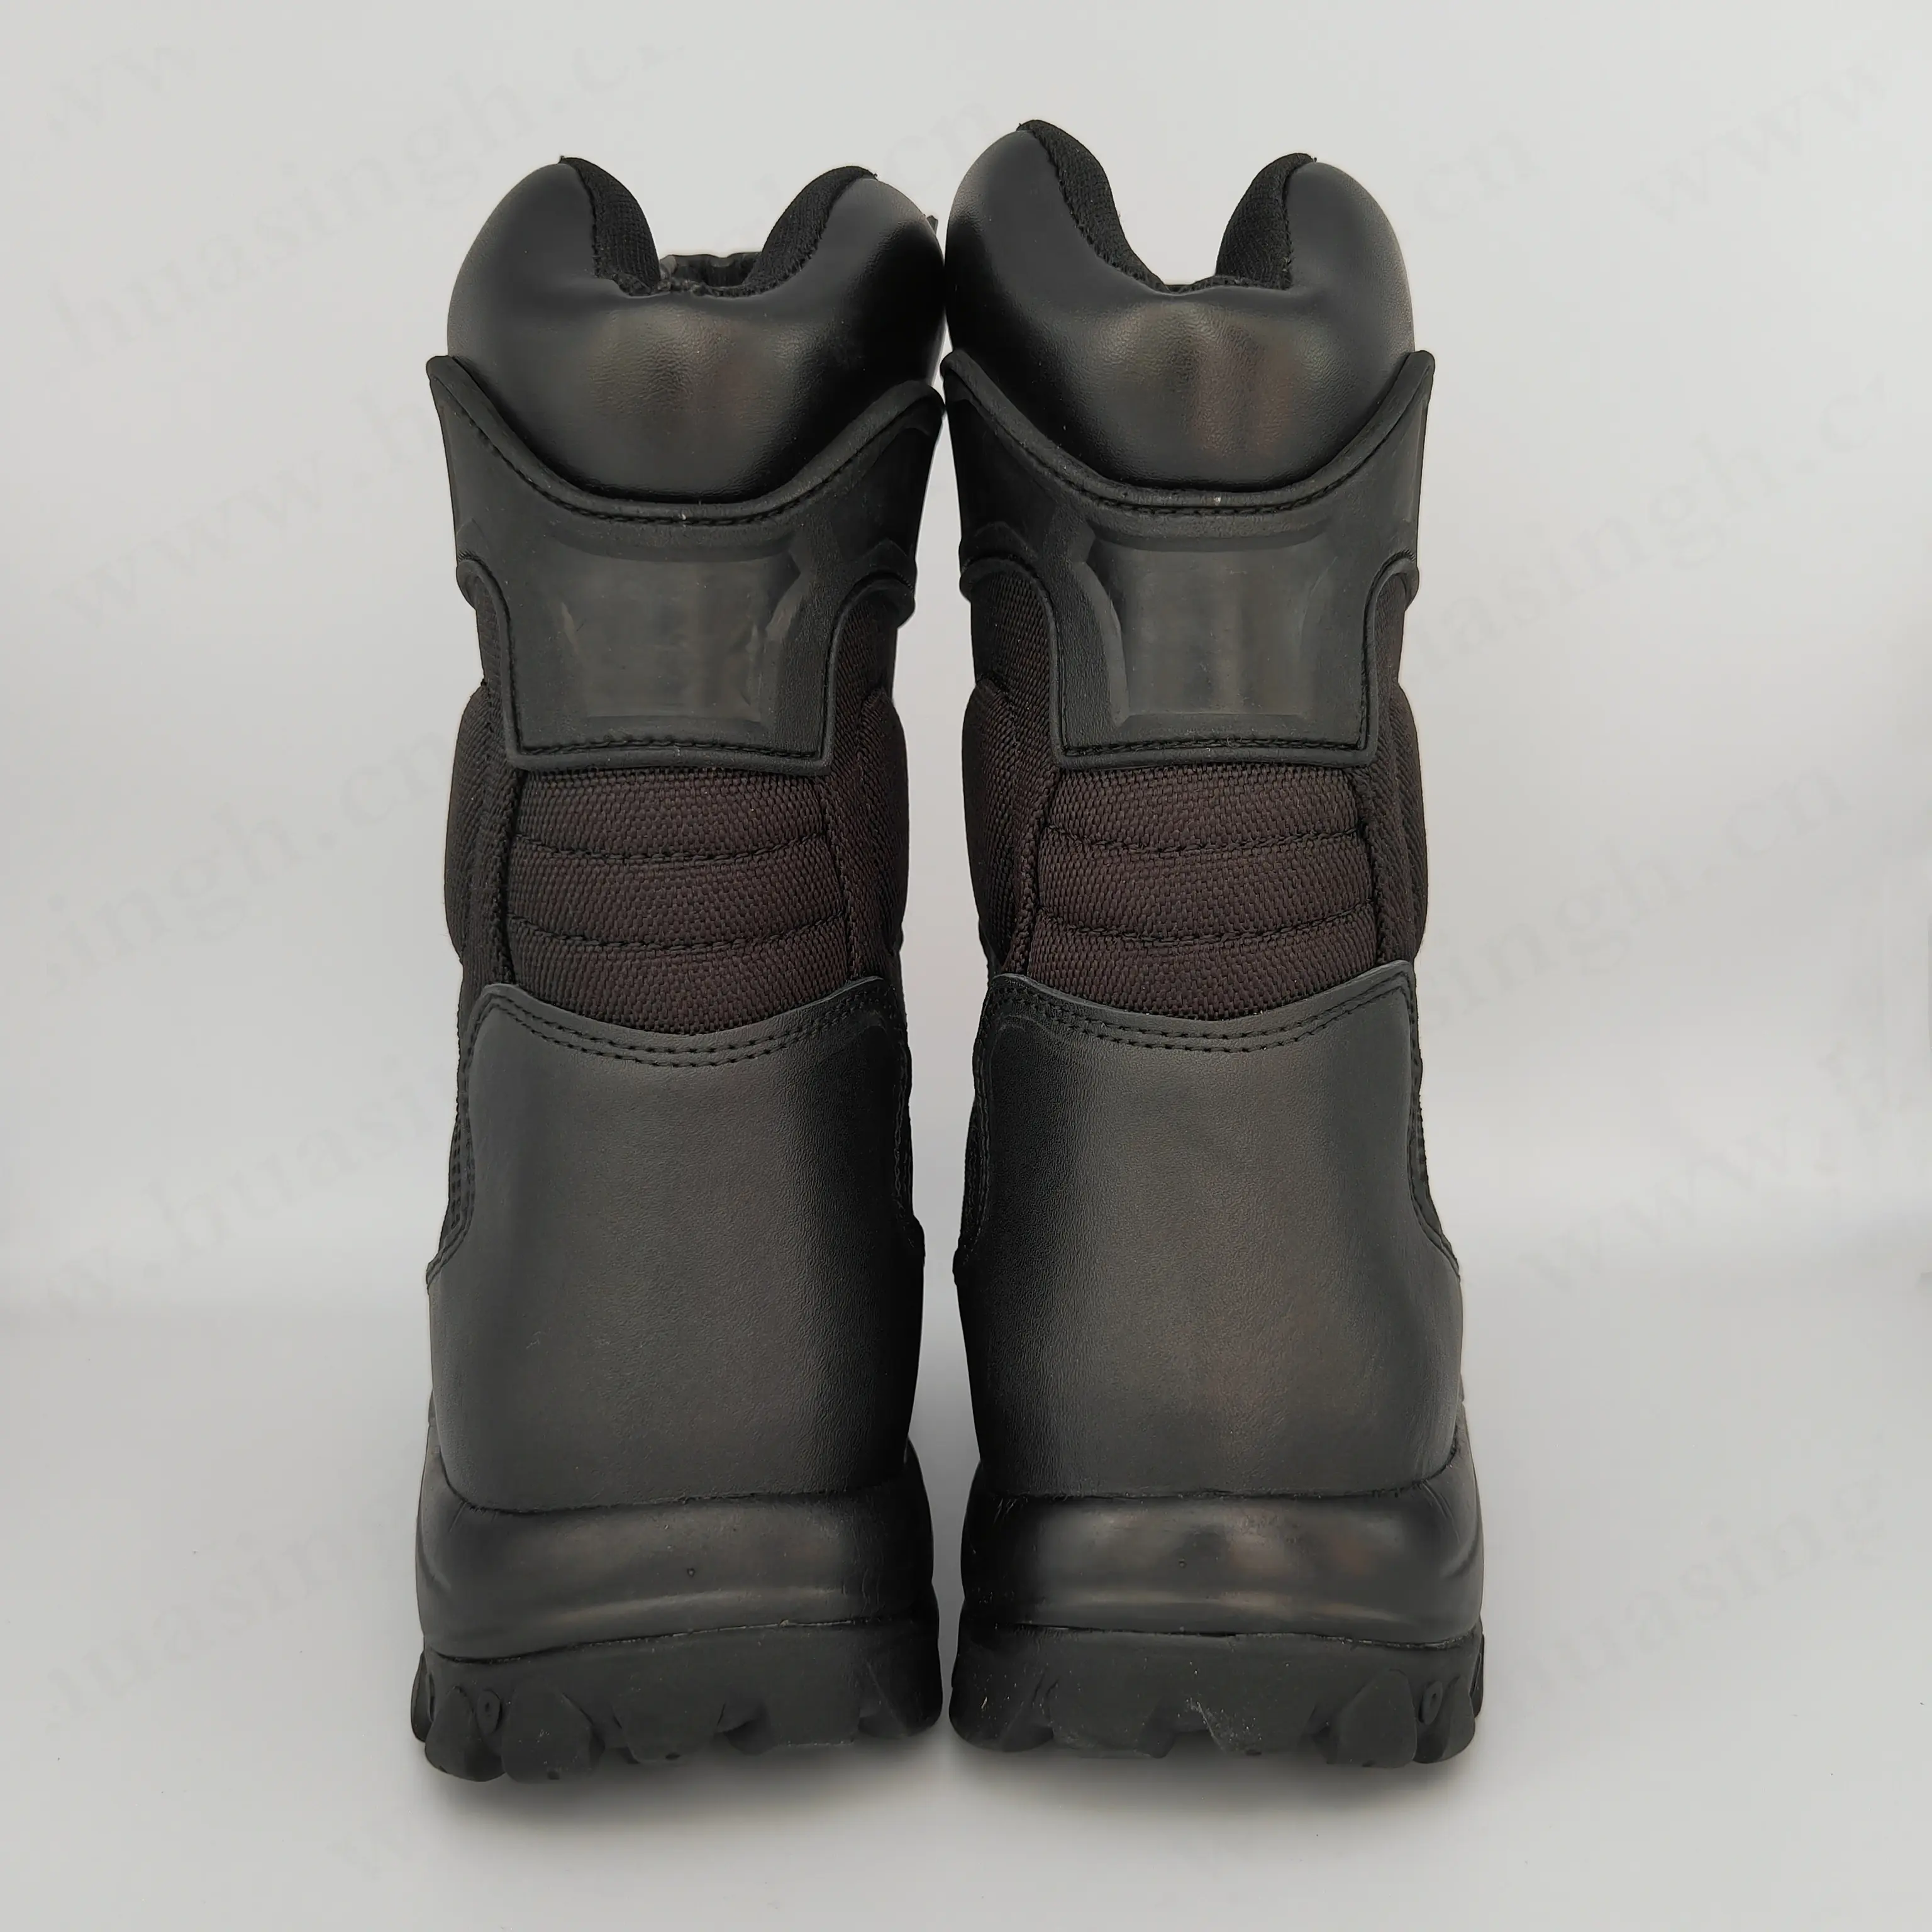 LXG, russischer Markt beliebte Qualität schwarze Leder taktische Stiefel Kampf Trainings stiefel zum Verkauf HSM016